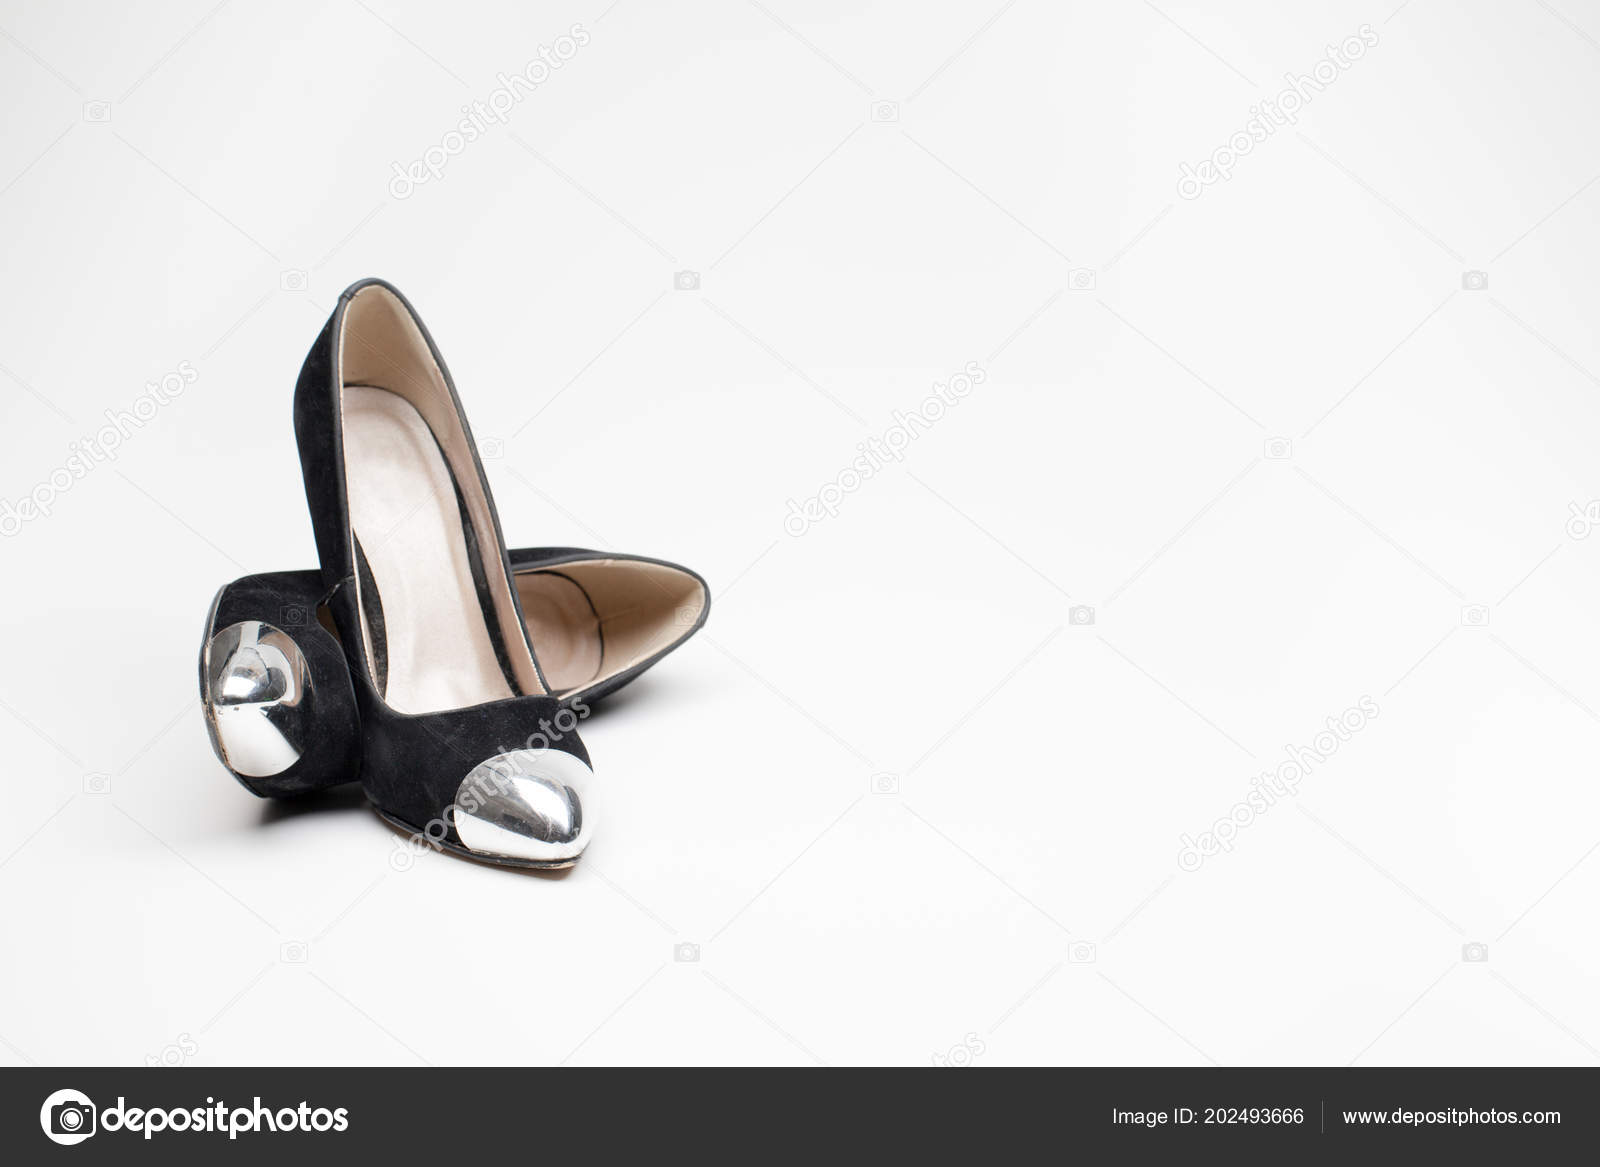 old lady heels